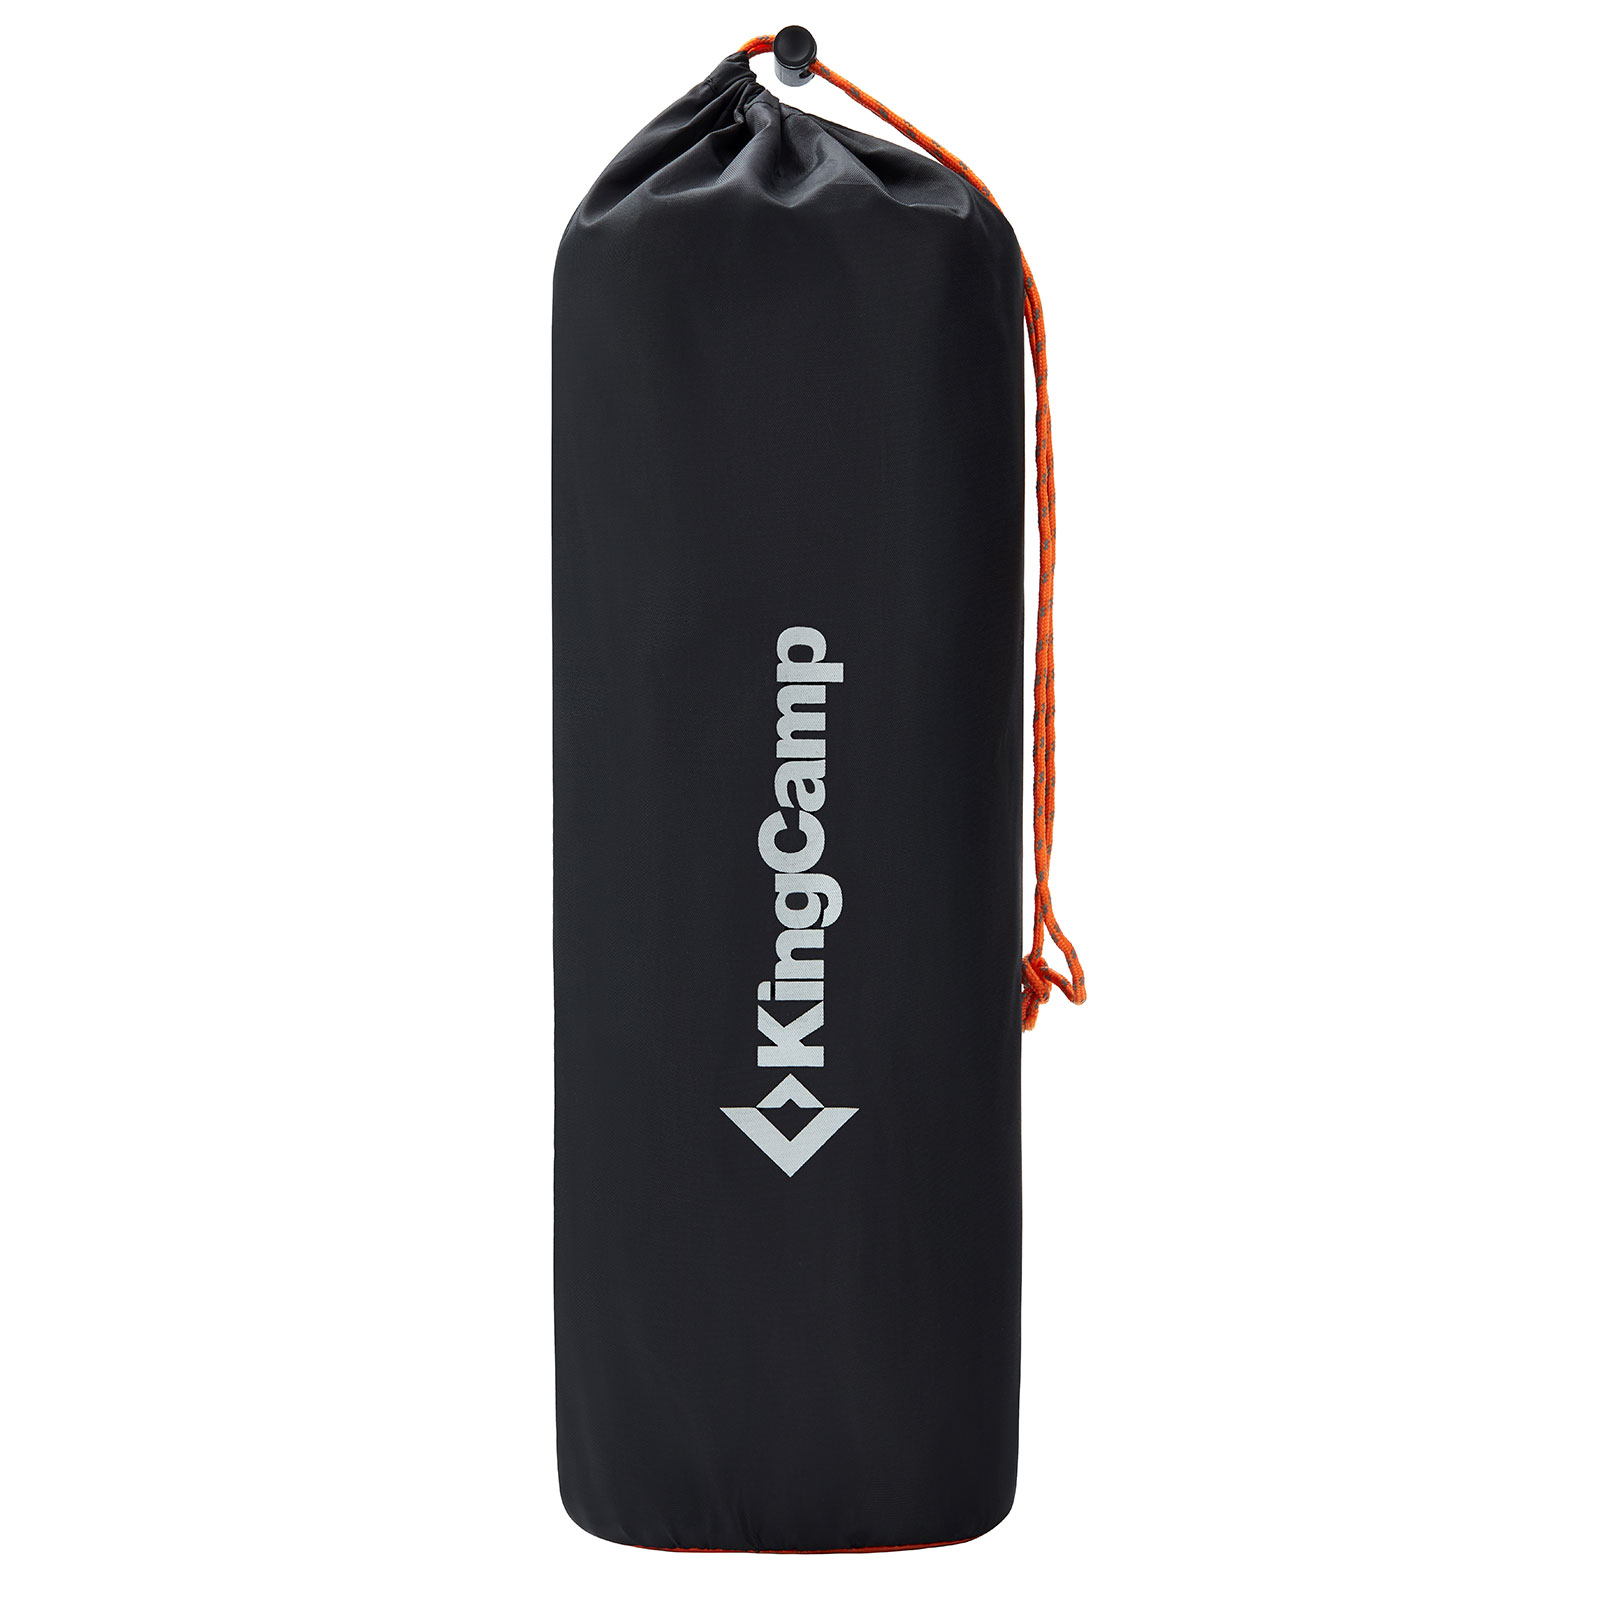 KINGCAMP Isomatte Comfort Deluxe Trekking Camping Luft Bett Matratze 10 cm 1,3kg